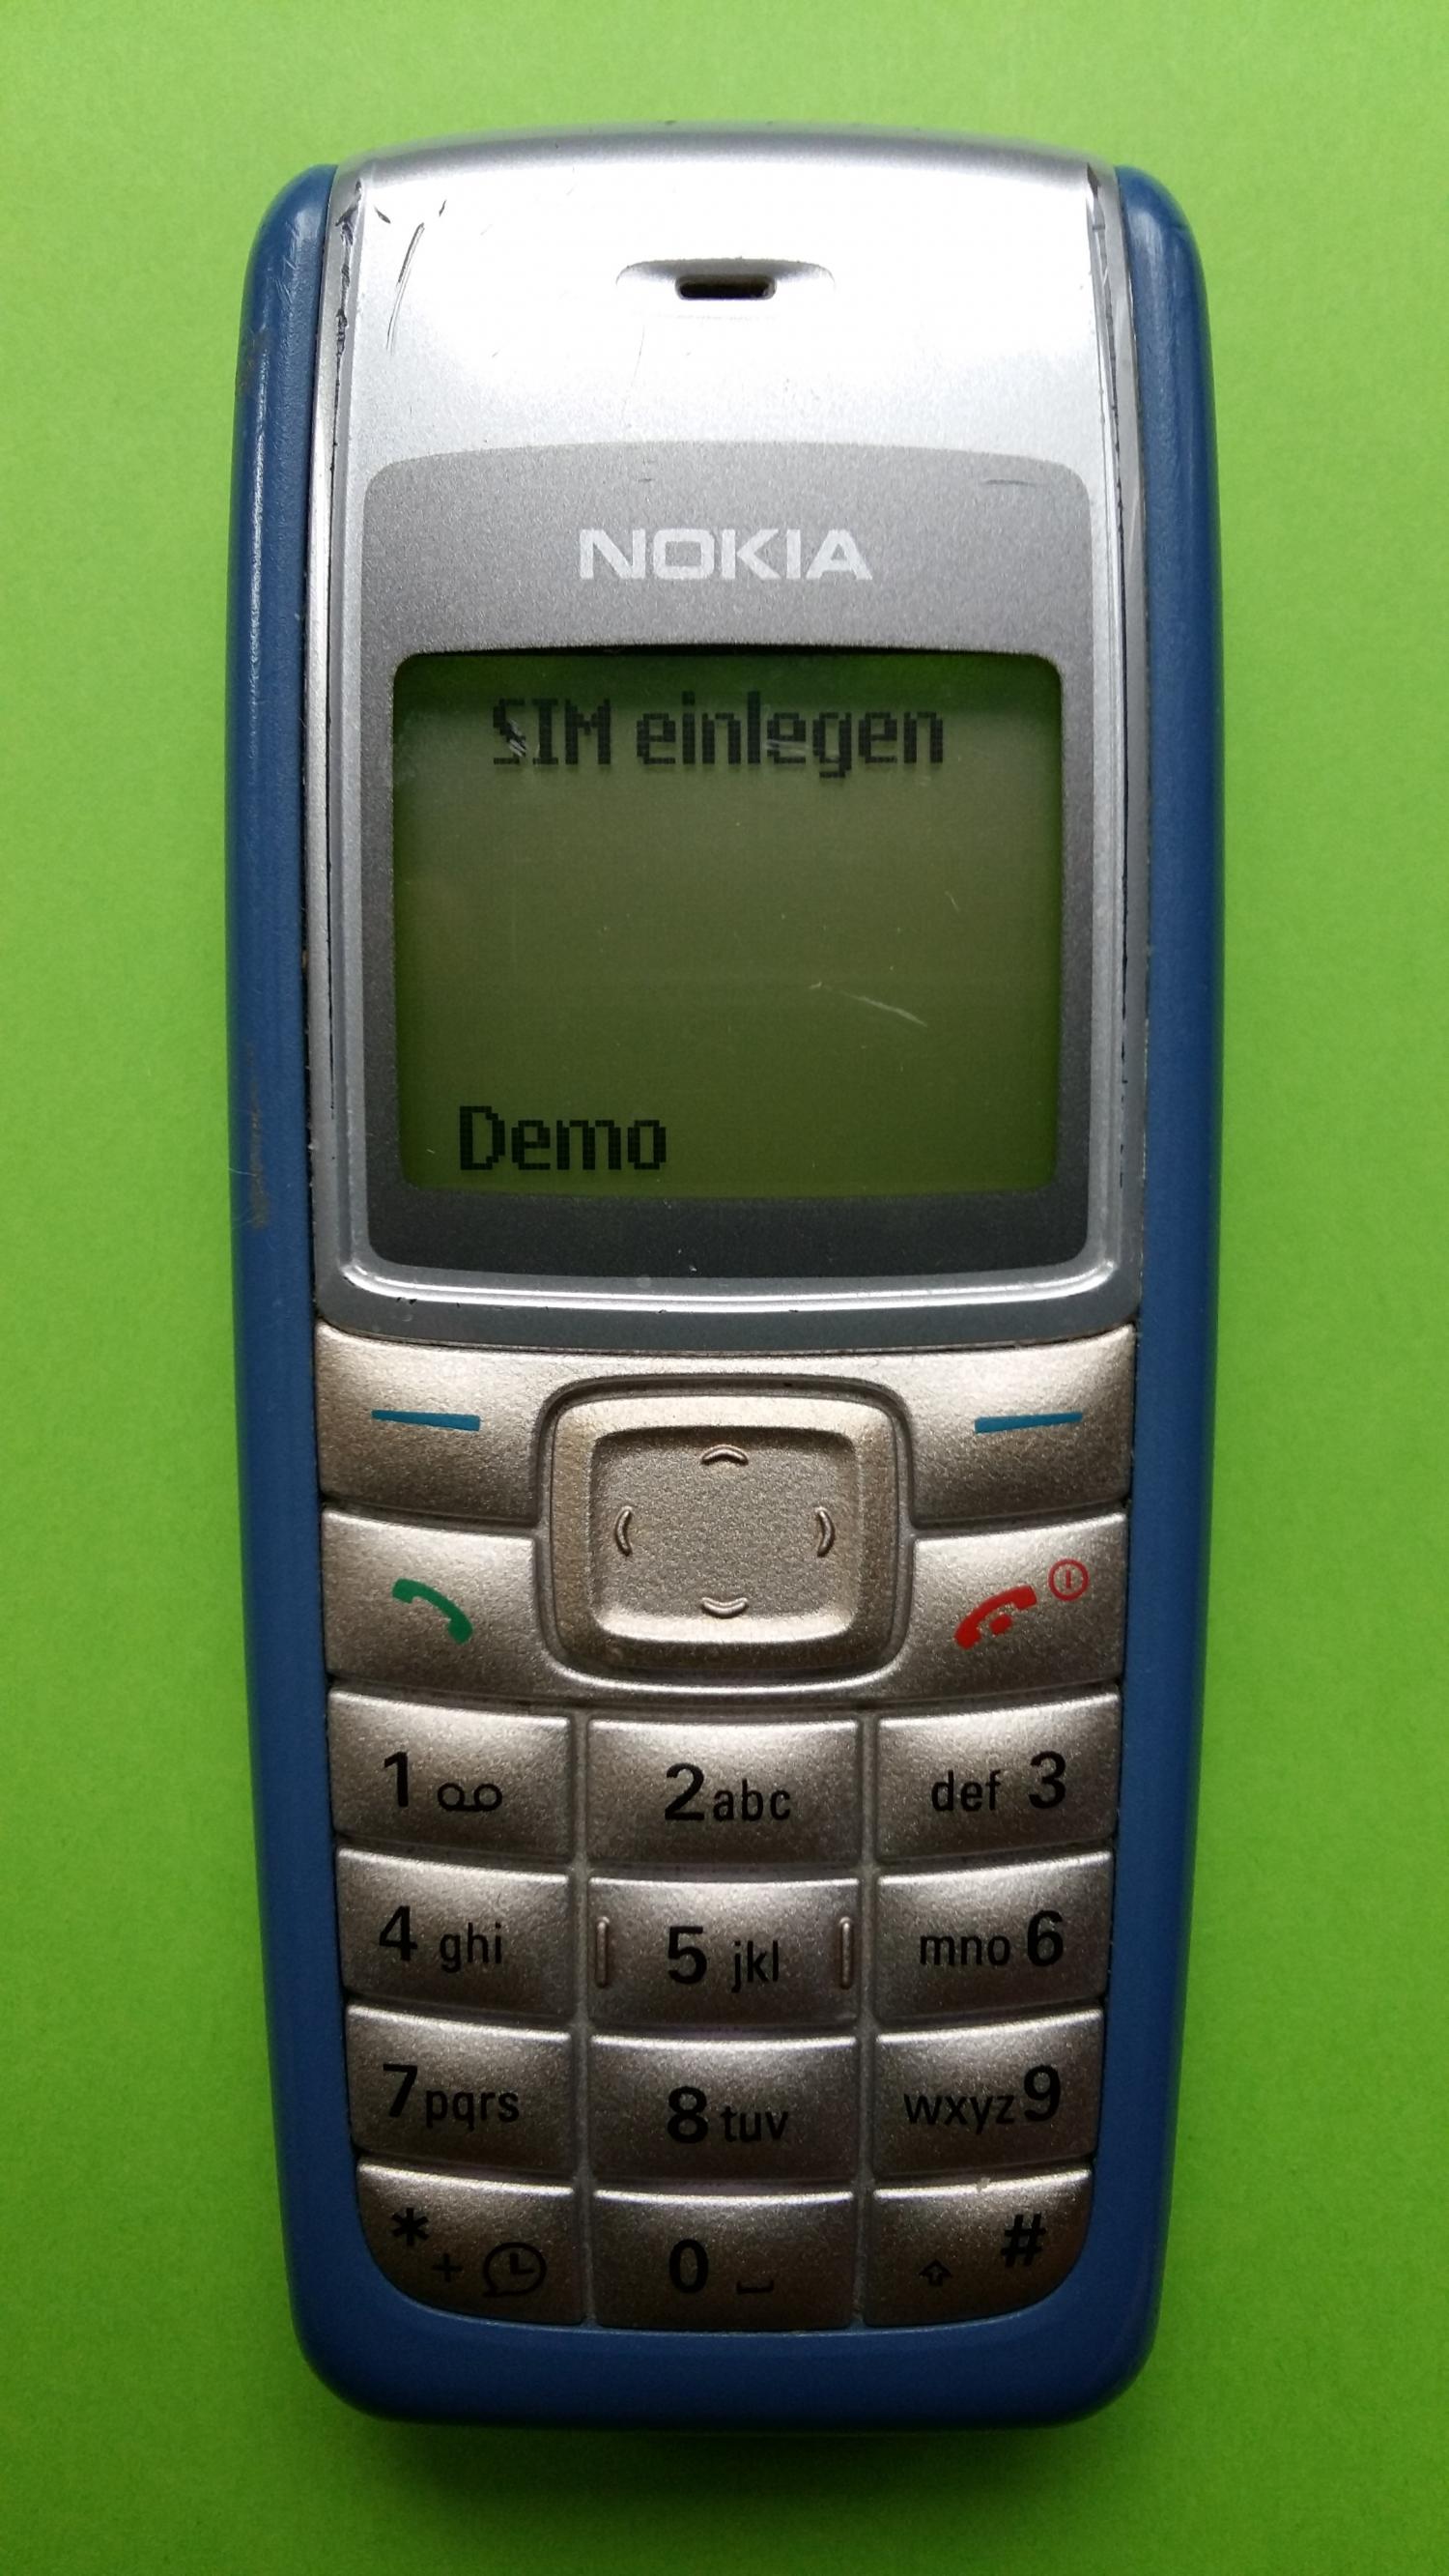 image-7300363-Nokia 1110i (1)1.jpg